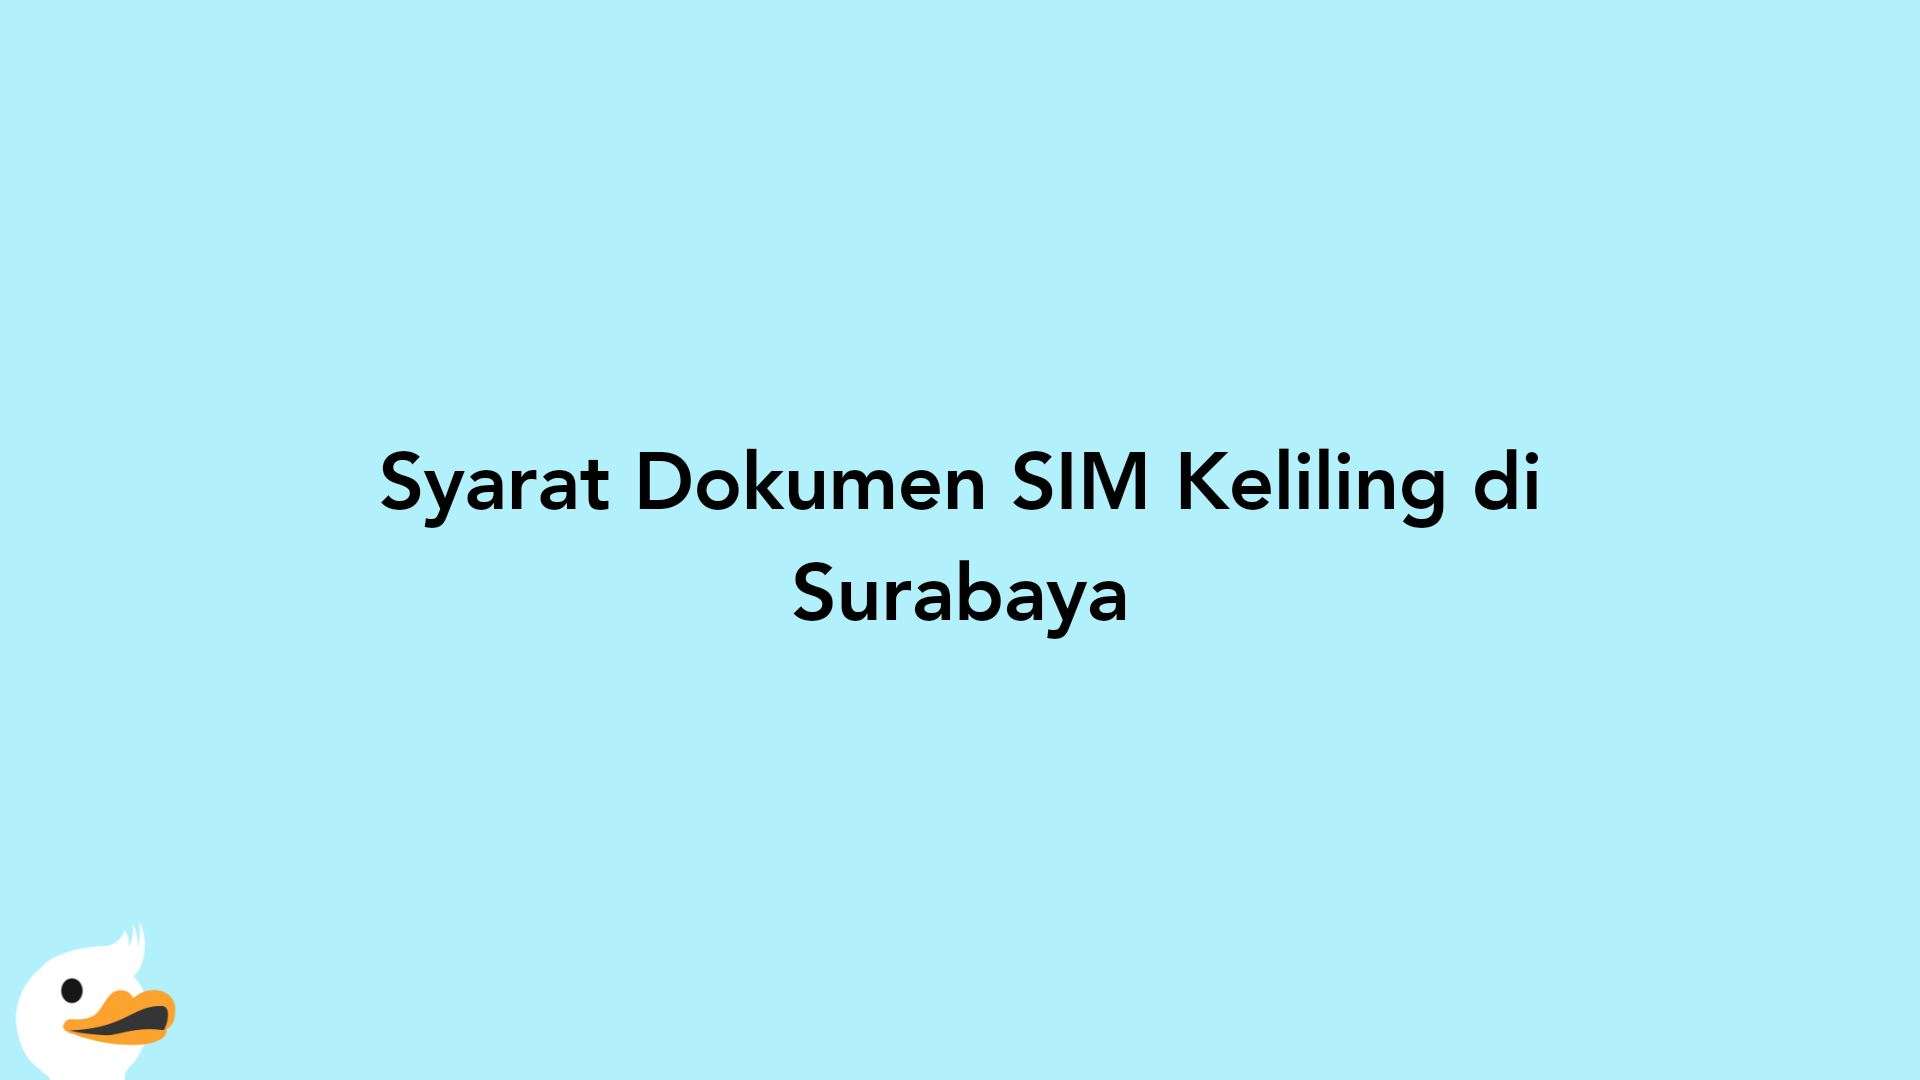 Syarat Dokumen SIM Keliling di Surabaya